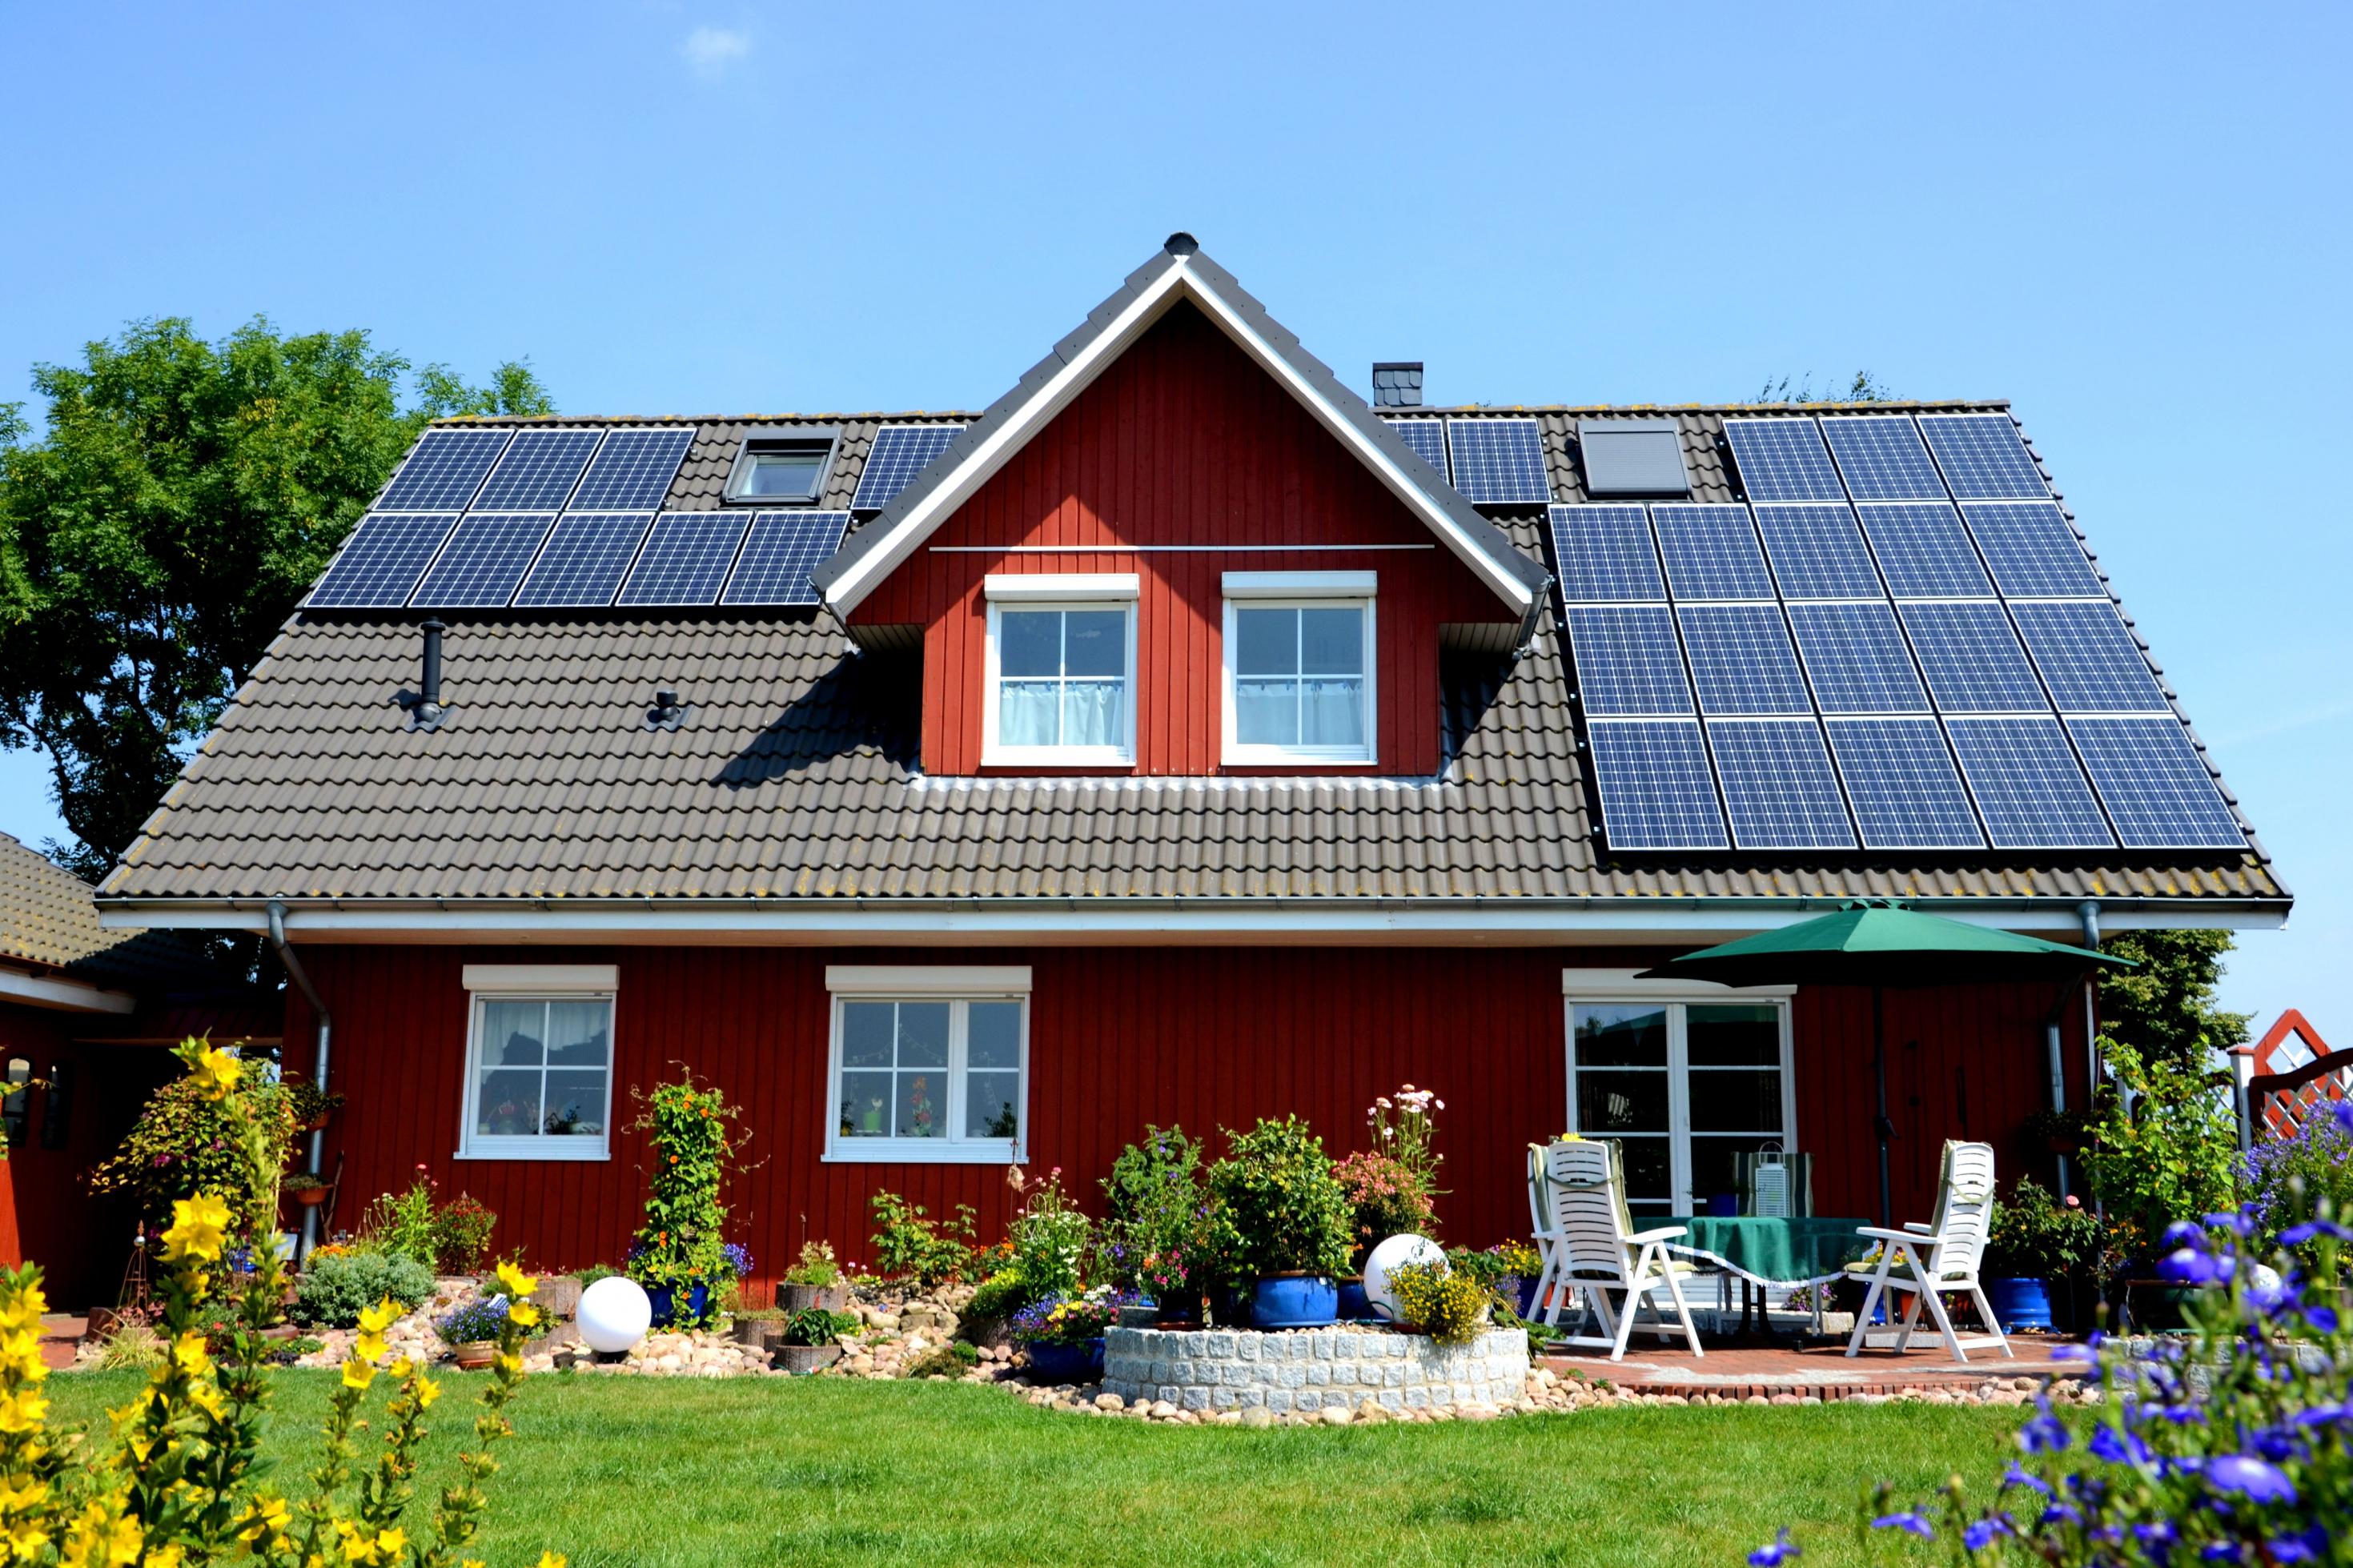 Frontalansicht eines roten Einfamilienhauses mit großer Photovoltaik-Anlage auf dem Dach, im Vordergrund Garten